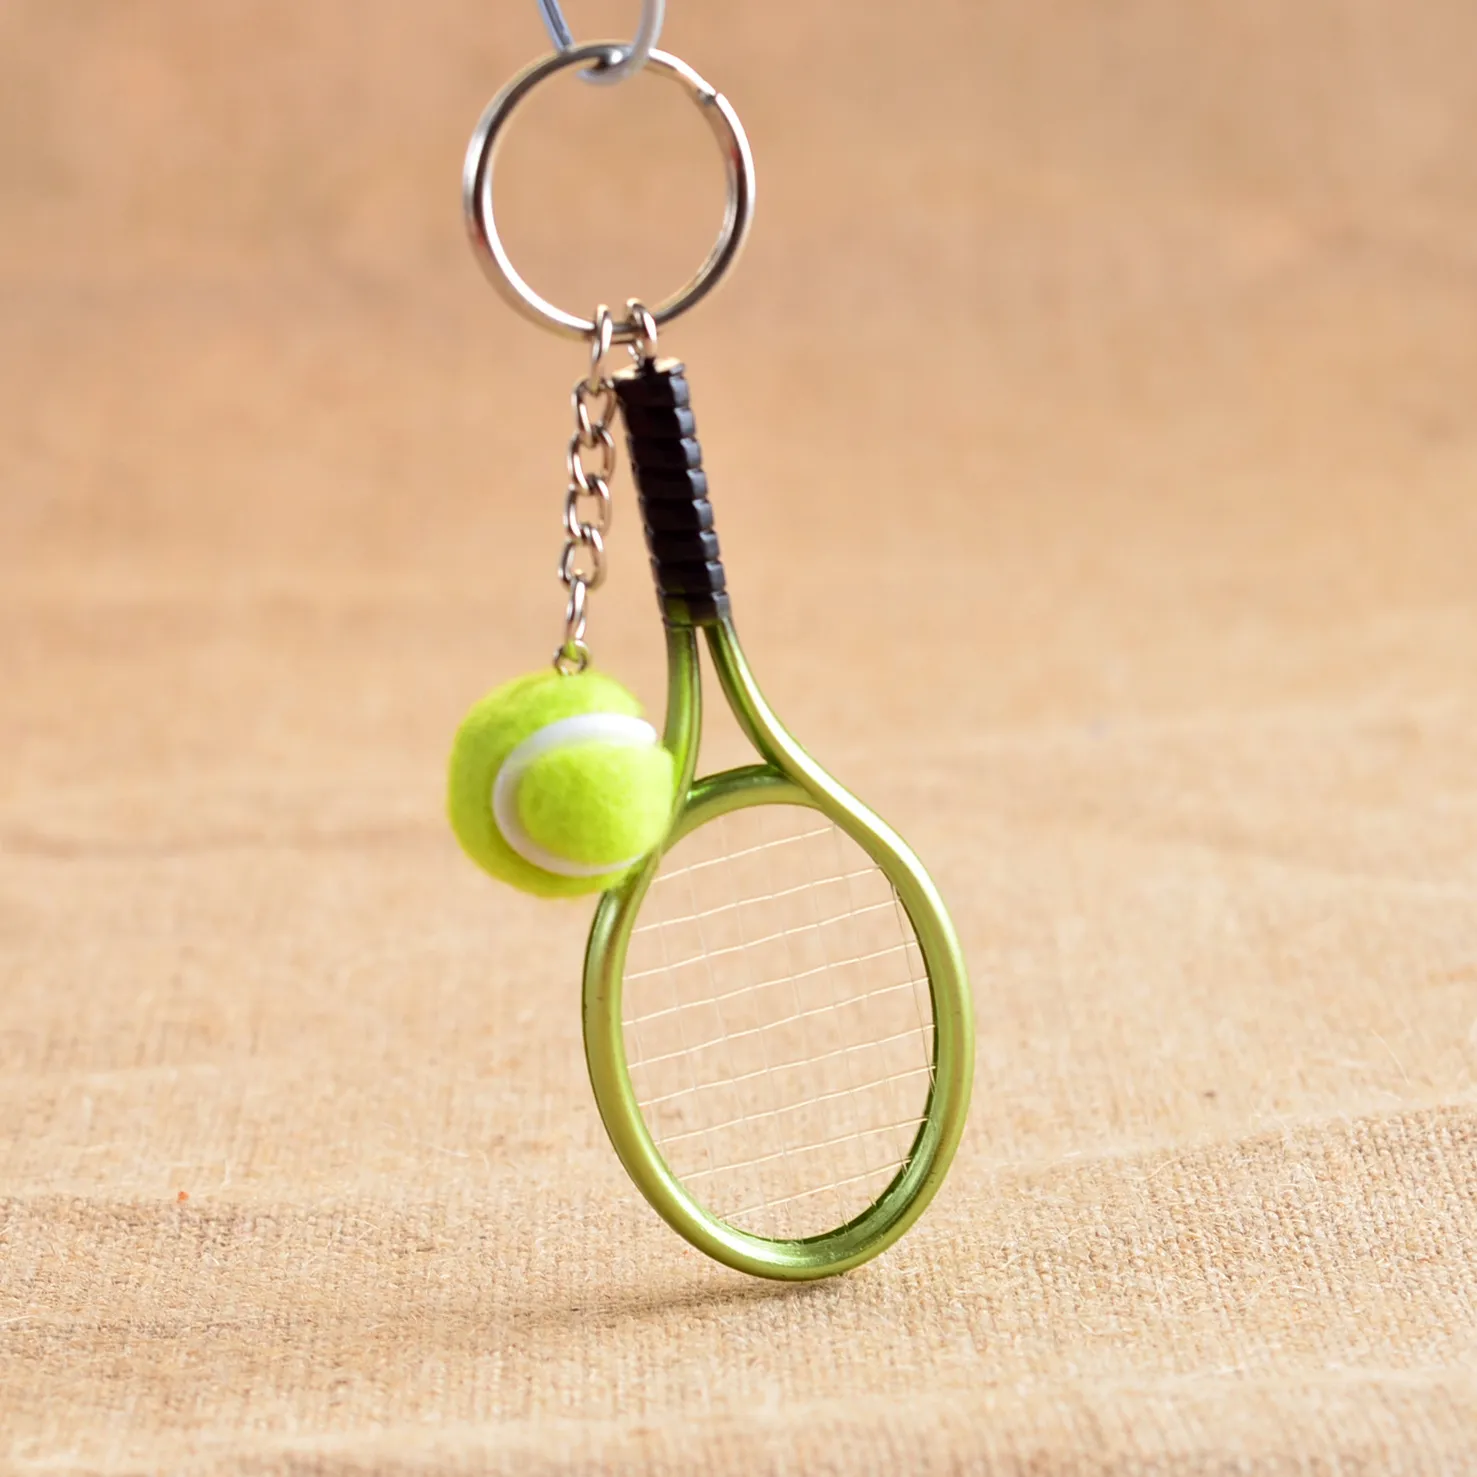 Новое прибытие мини теннисная ракетка брелок творческая личность реклама небольшие подарки R158 декоративно-прикладного искусства смешать заказ как ваши потребности